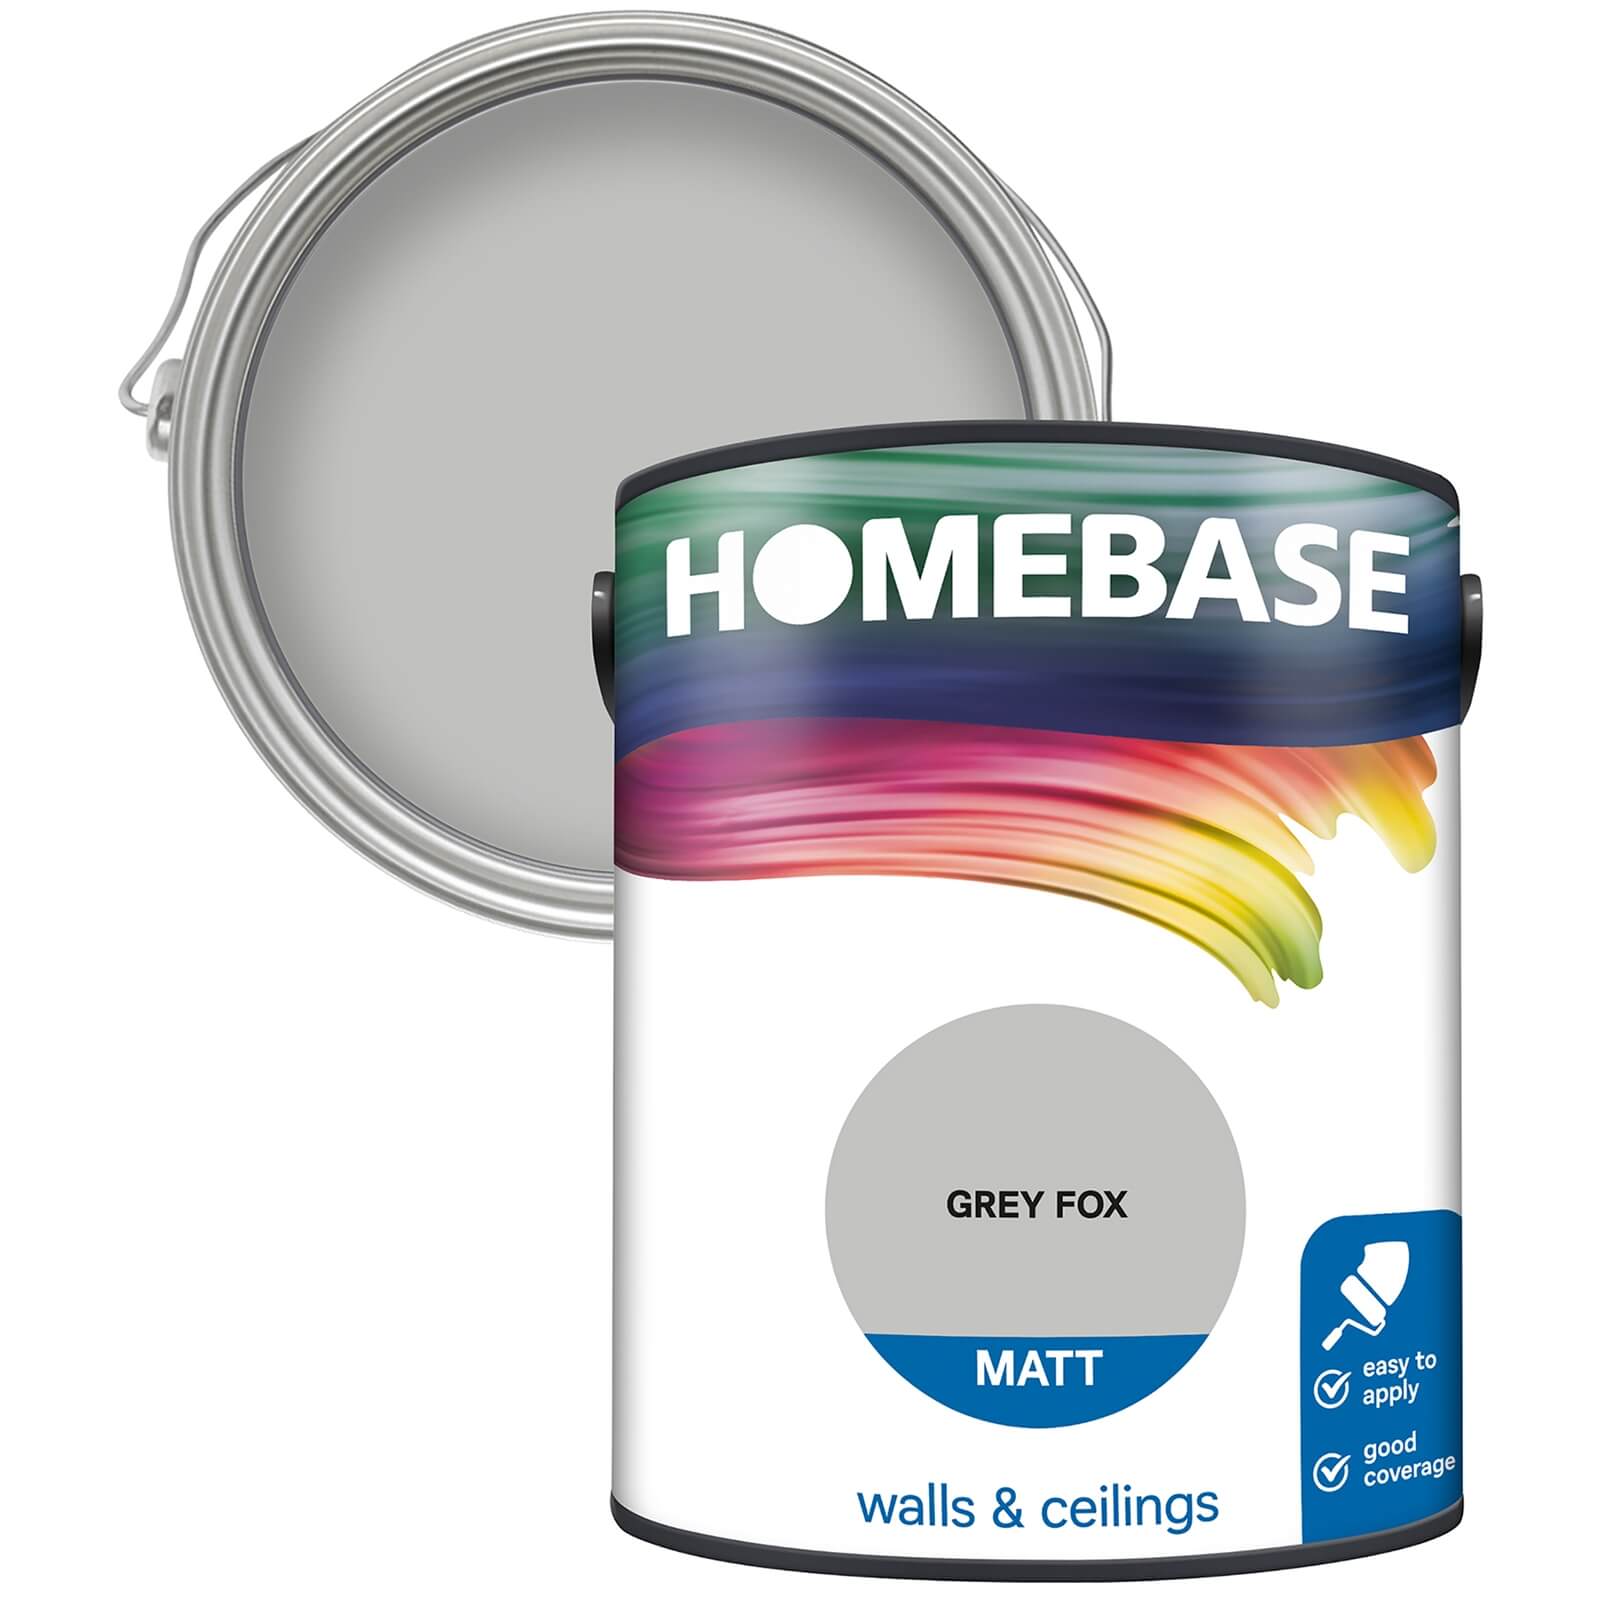 Homebase Matt Emulsion Paint Grey Fox - 5L